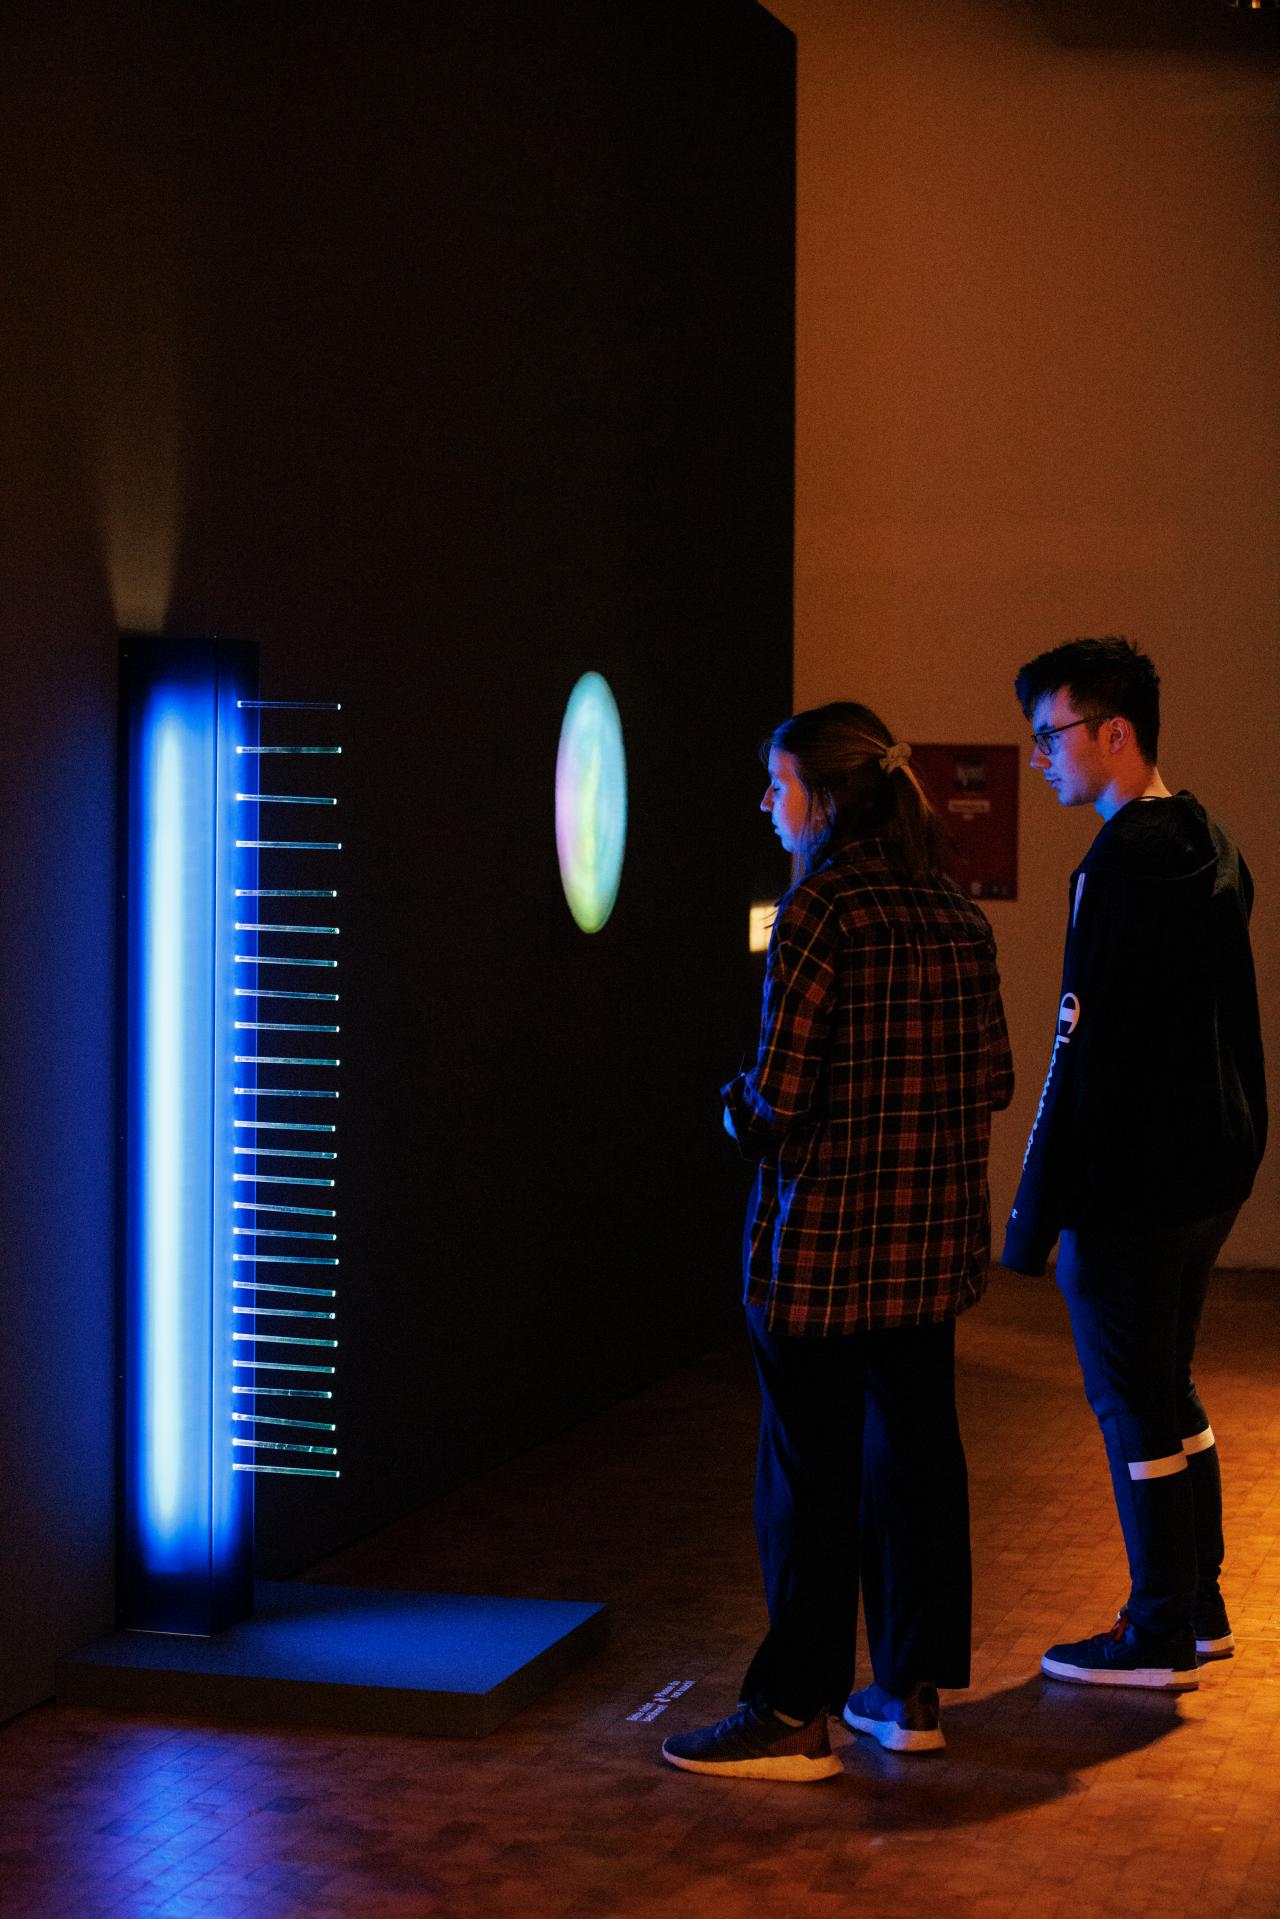 Zwei junge Menschen stehen vor einer blau leuchtenden Stele, die in etwa die Größe eines Menschen hat. Im Hintergrund leuchten verschiedenen Kunstwerke in bunten Farben auf.